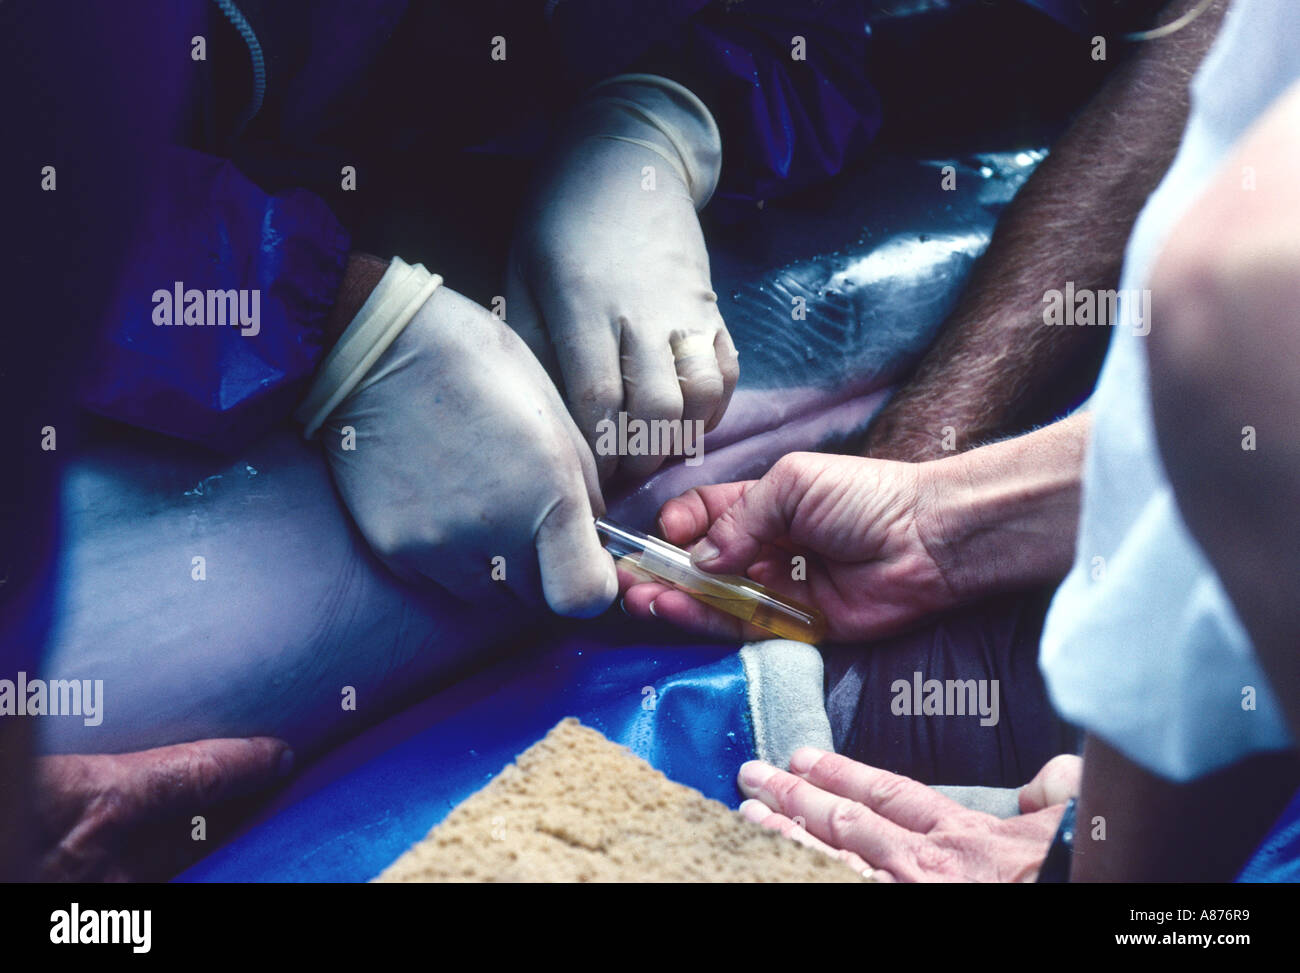 USA Florida Medical examination of a dolphin Stock Photo